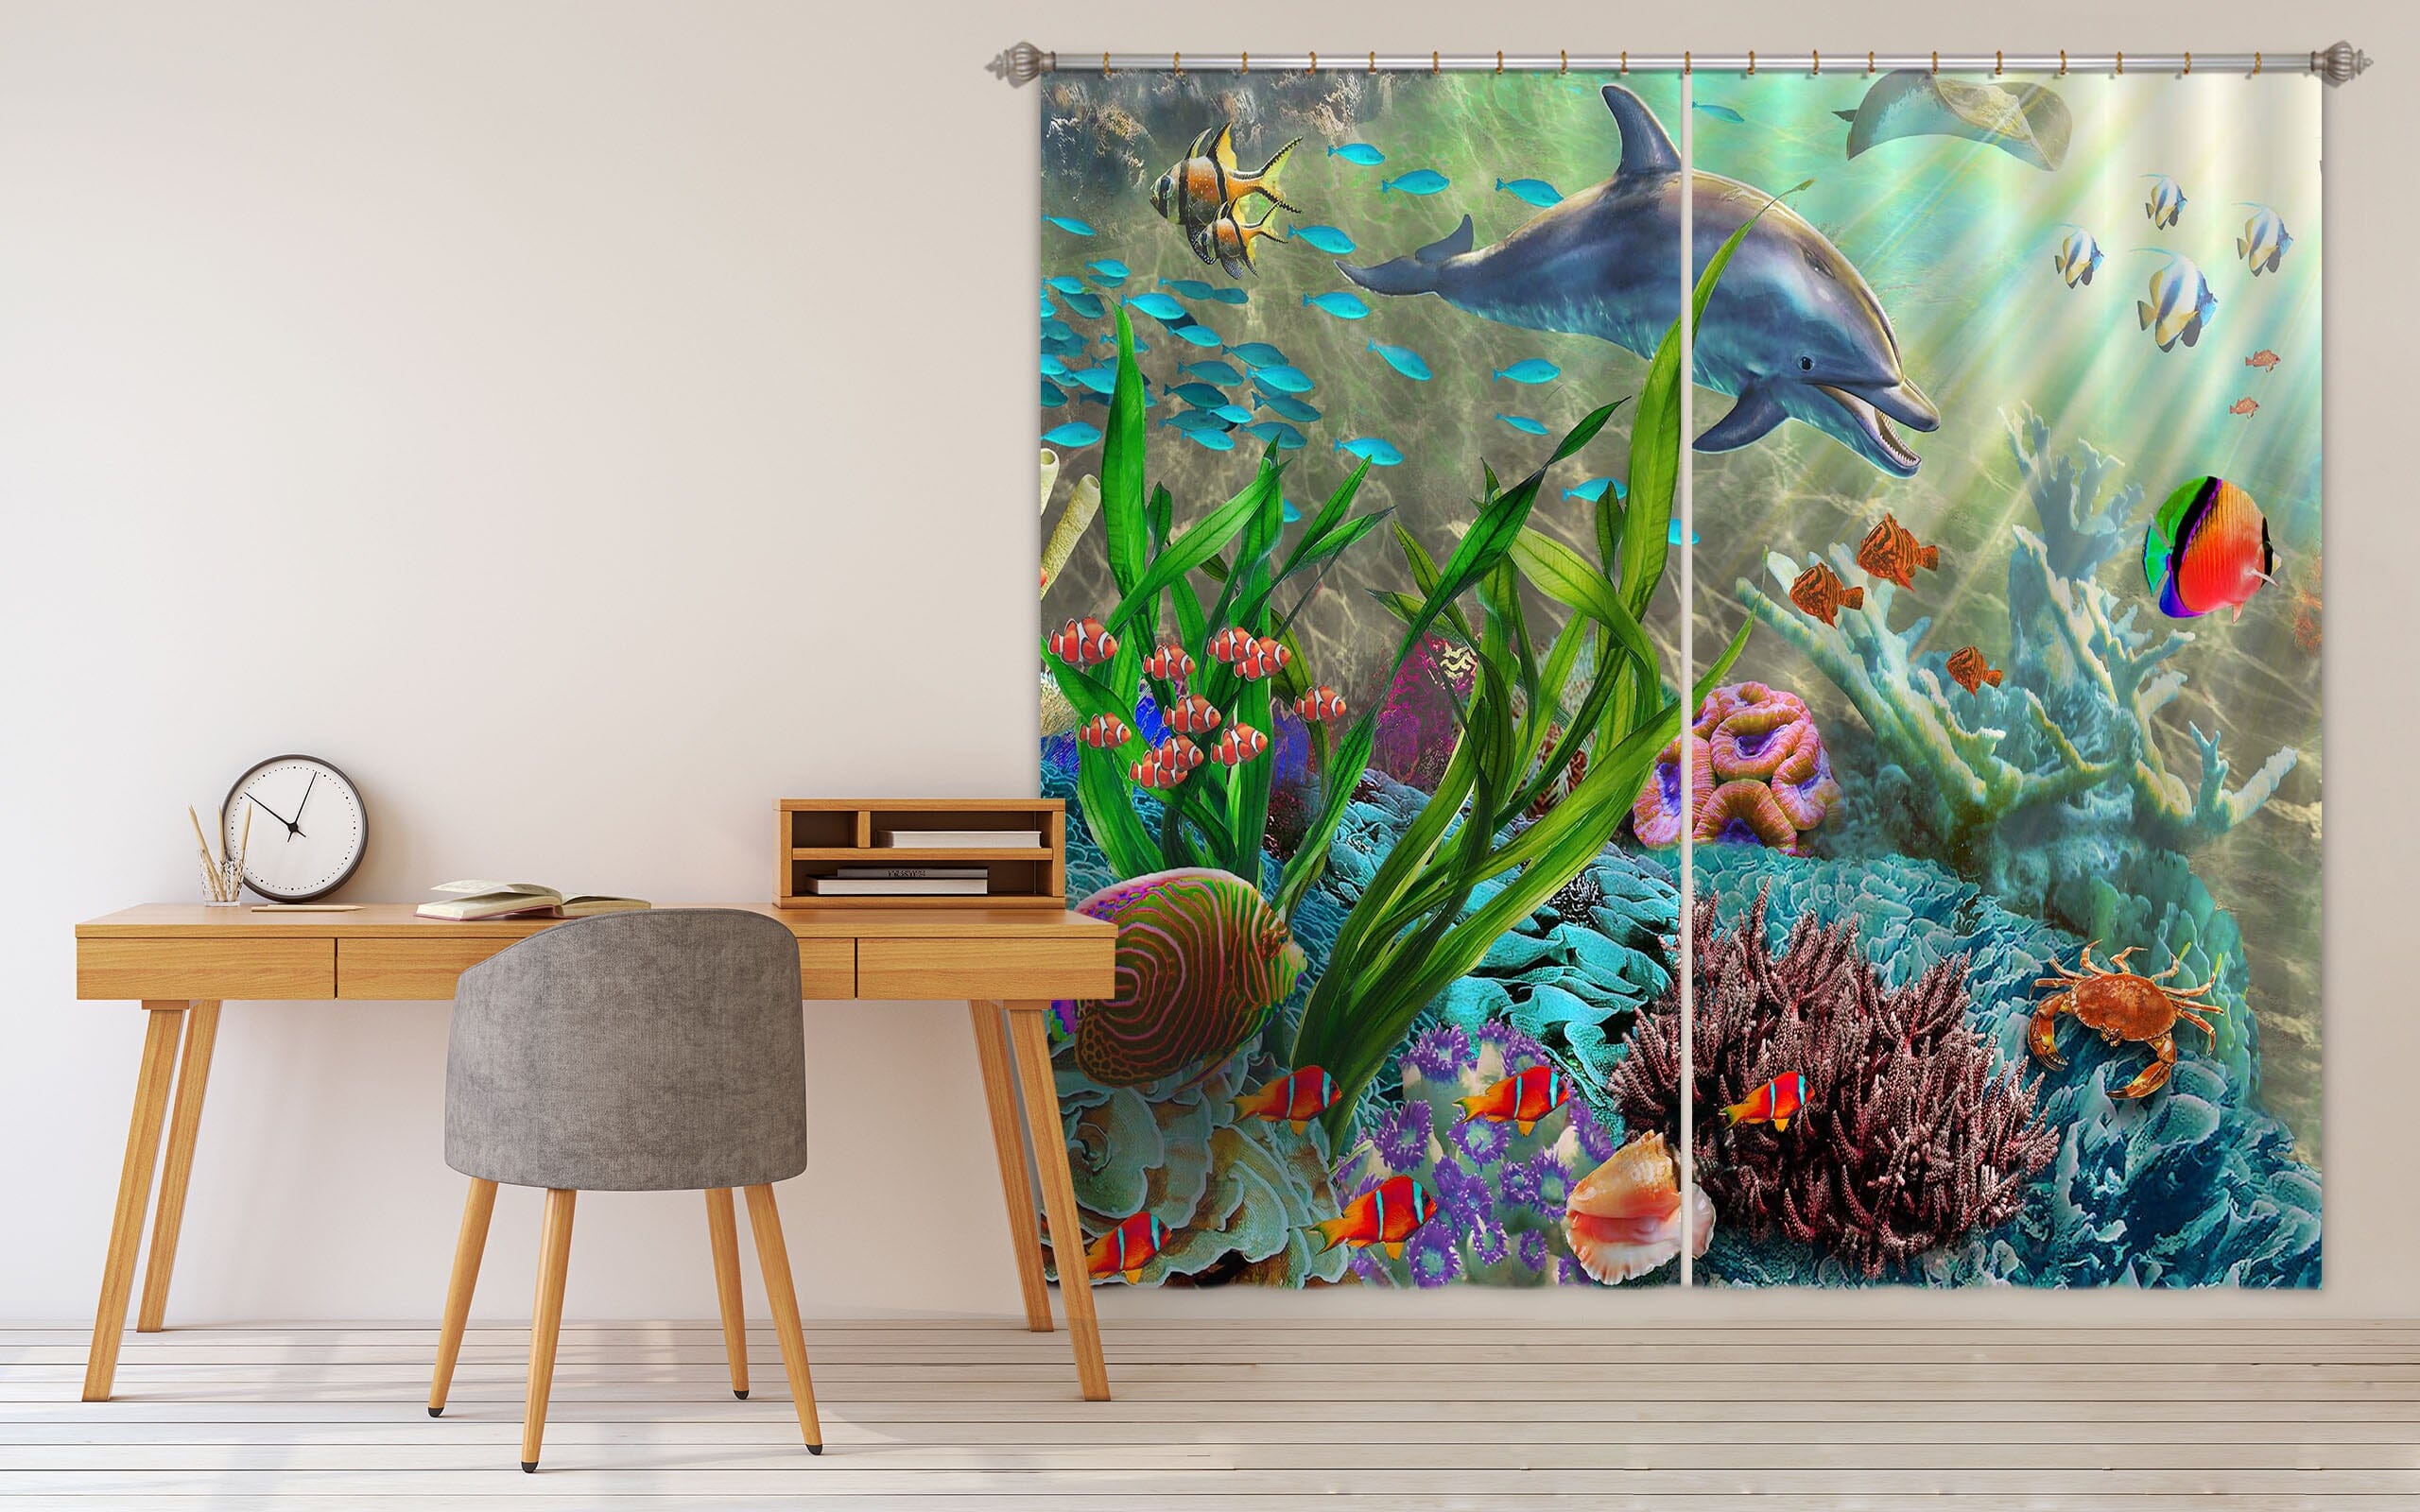 3D Colored Fish 053 Adrian Chesterman Curtain Curtains Drapes Curtains AJ Creativity Home 